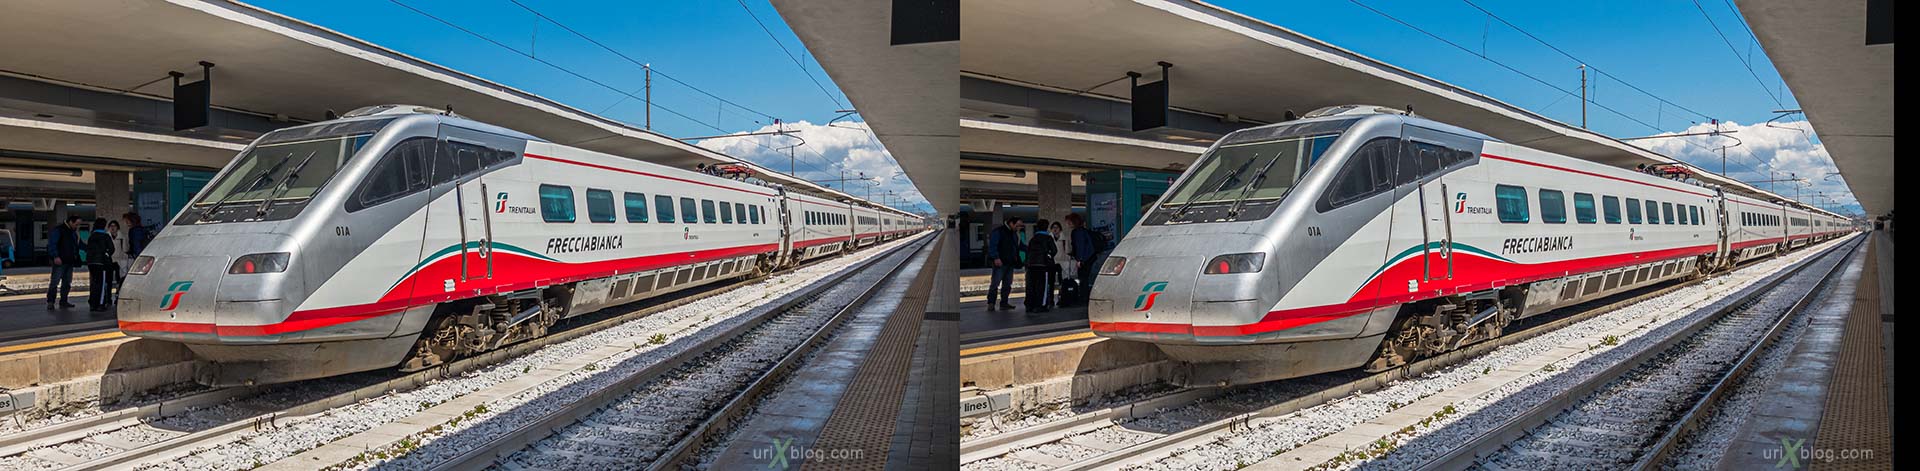 Napoli Centrale, Неаполь, жд вокзал, поезд, электровоз, Италия, 3D, перекрёстная стереопара, стерео, стереопара